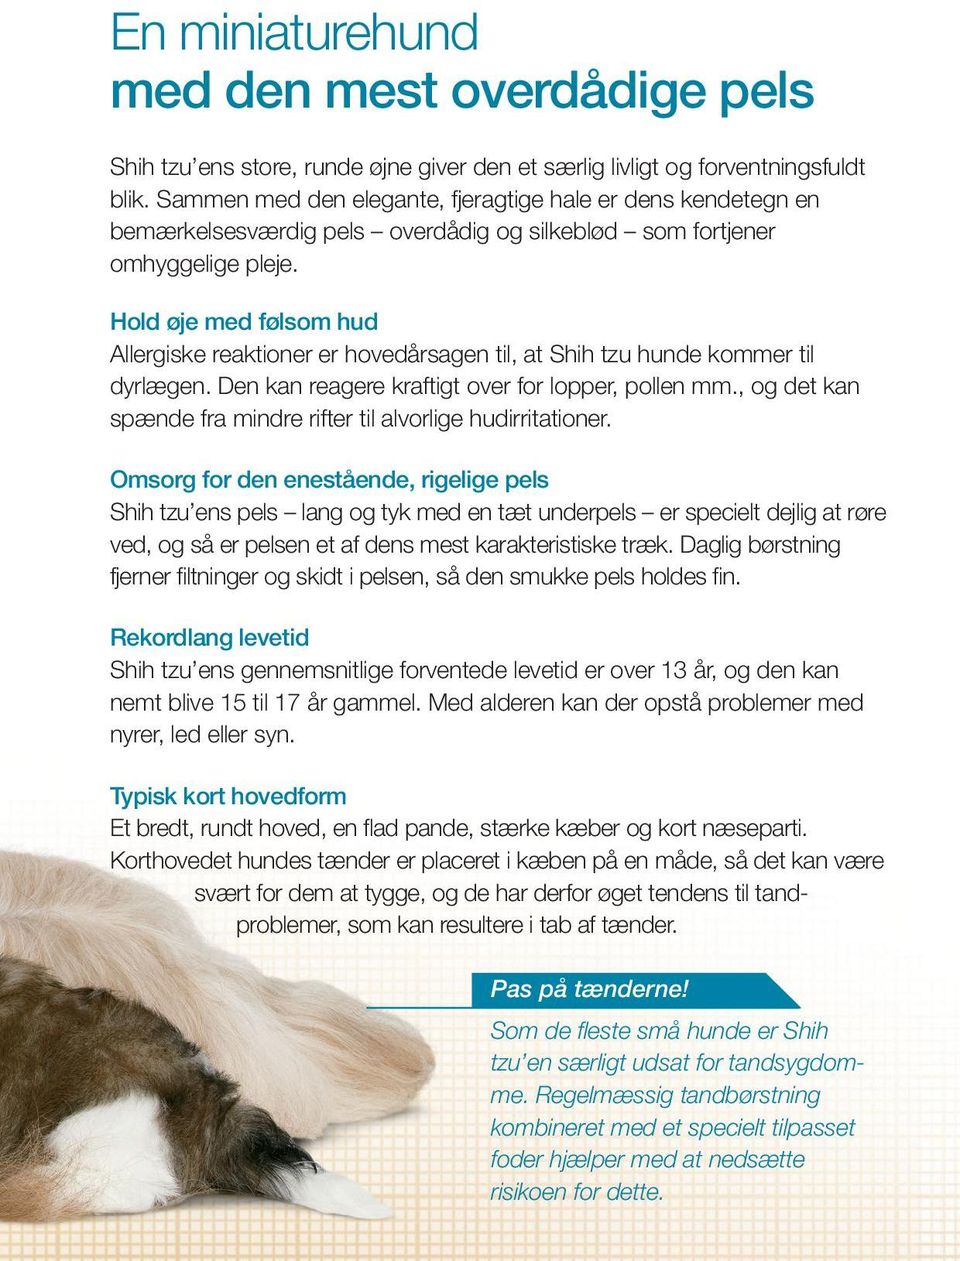 Hold øje med følsom hud Allergiske reaktioner er hovedårsagen til, at Shih tzu hunde kommer til dyrlægen. Den kan reagere kraftigt over for lopper, pollen mm.